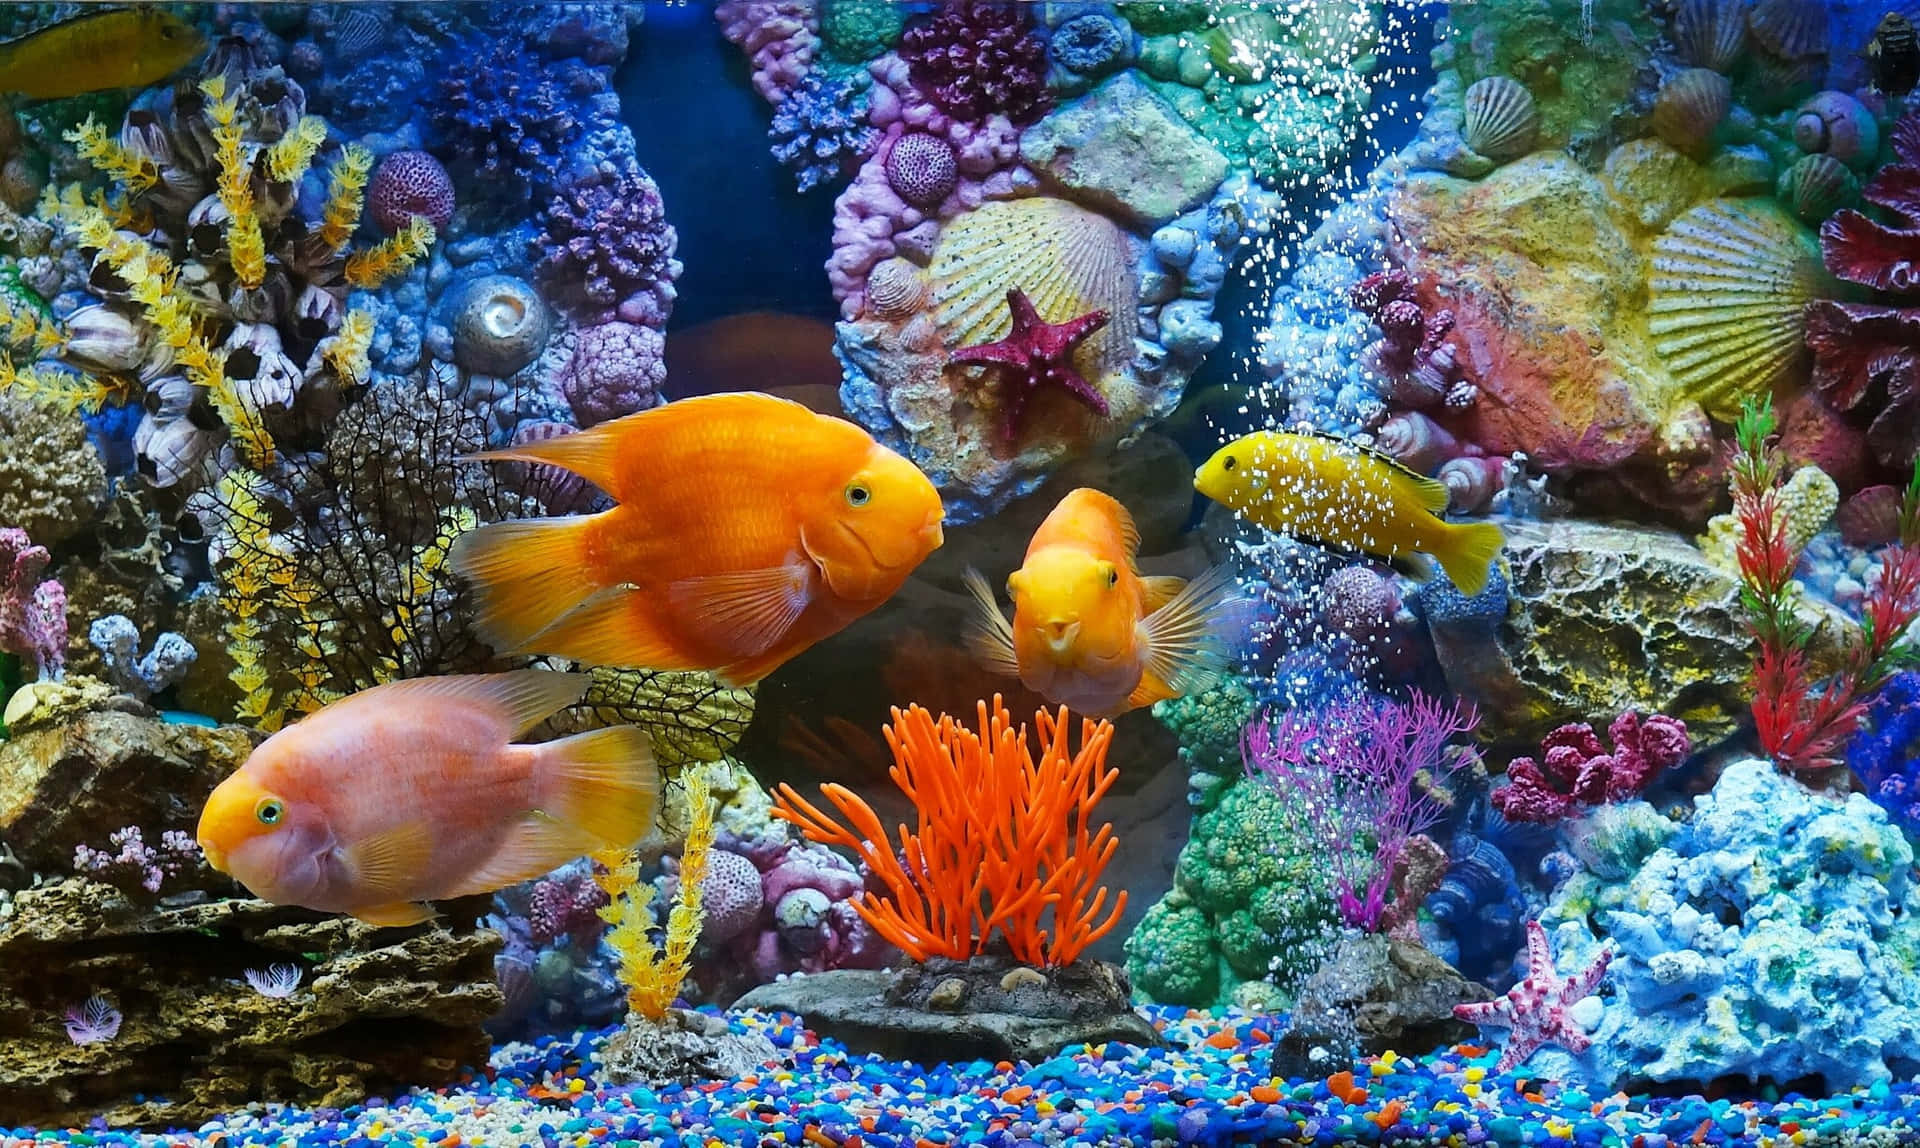 Einfaszinierender Blick Auf Ein Lebendiges Aquarium.